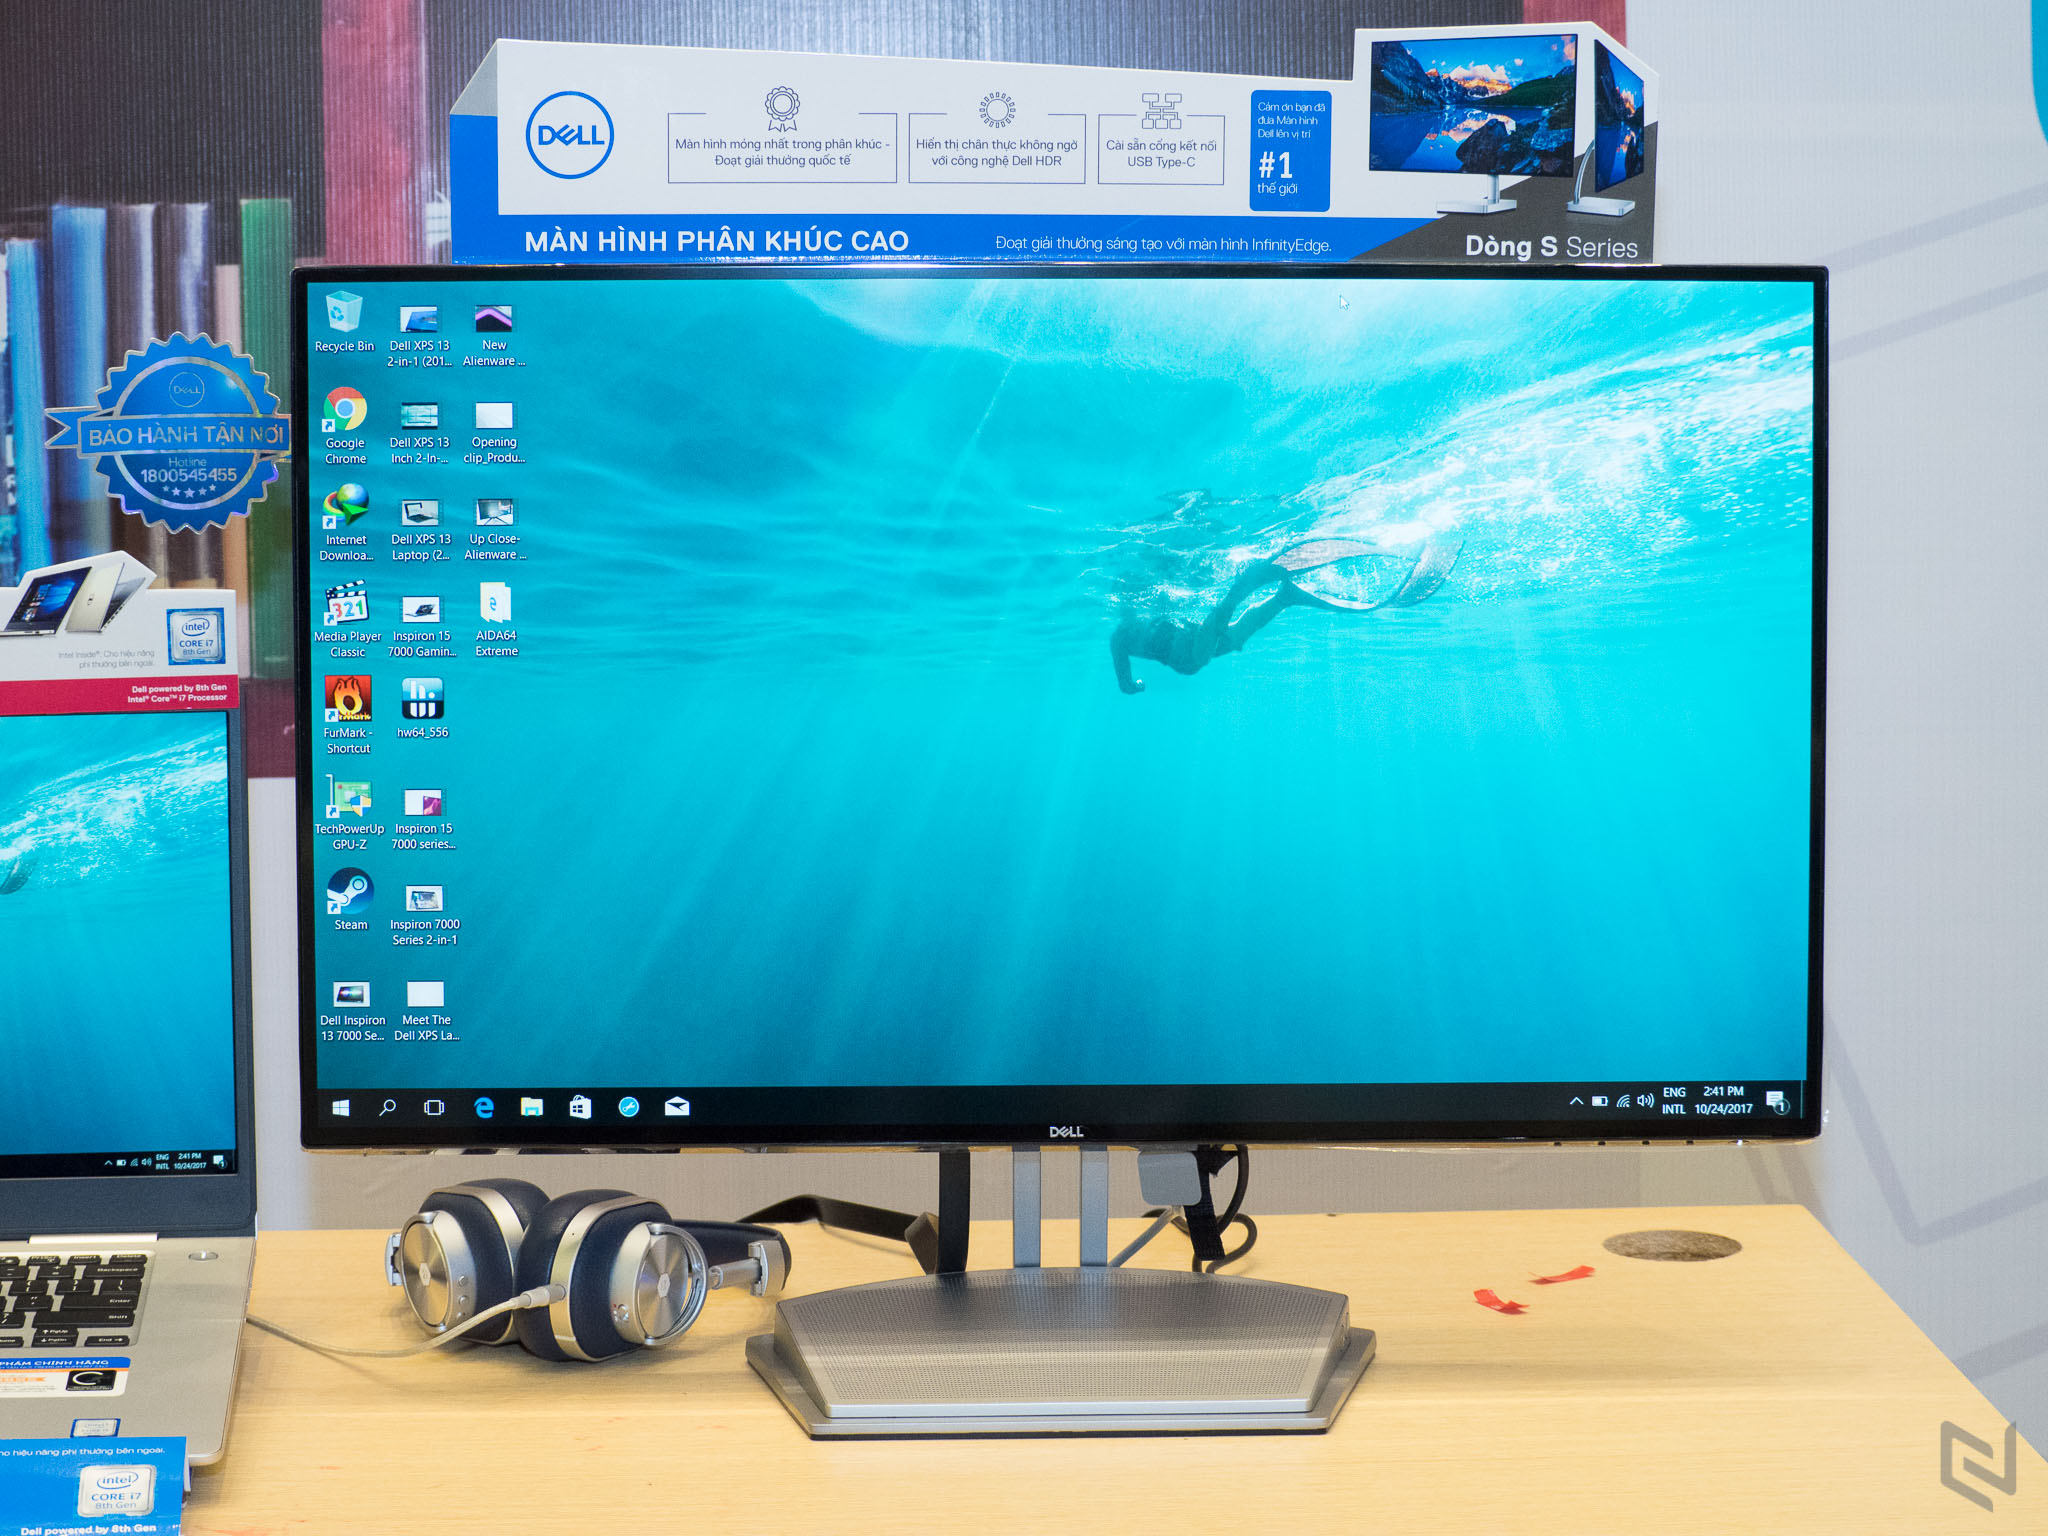 Dell chính thức giới thiệu 2 chiếc laptop lai đầu tiên dòng XPS và Inspiron 7000